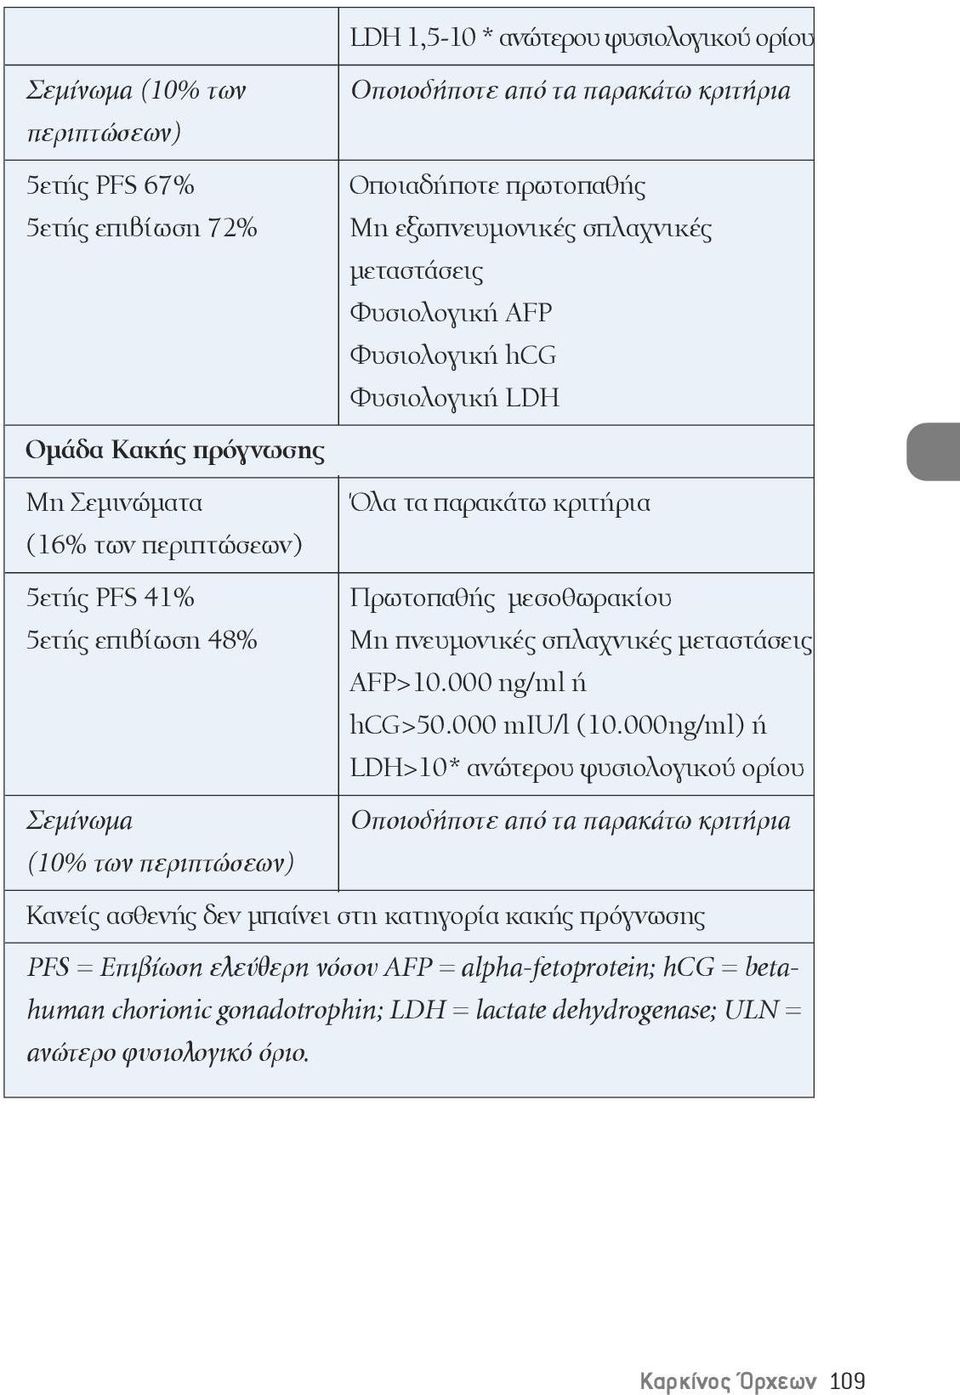 κριτήρια Πρωτοπαθής μεσοθωρακίου Μη πνευμονικές σπλαχνικές μεταστάσεις AFP>10.000 ng/ml ή hcg>50.000 miu/l (10.